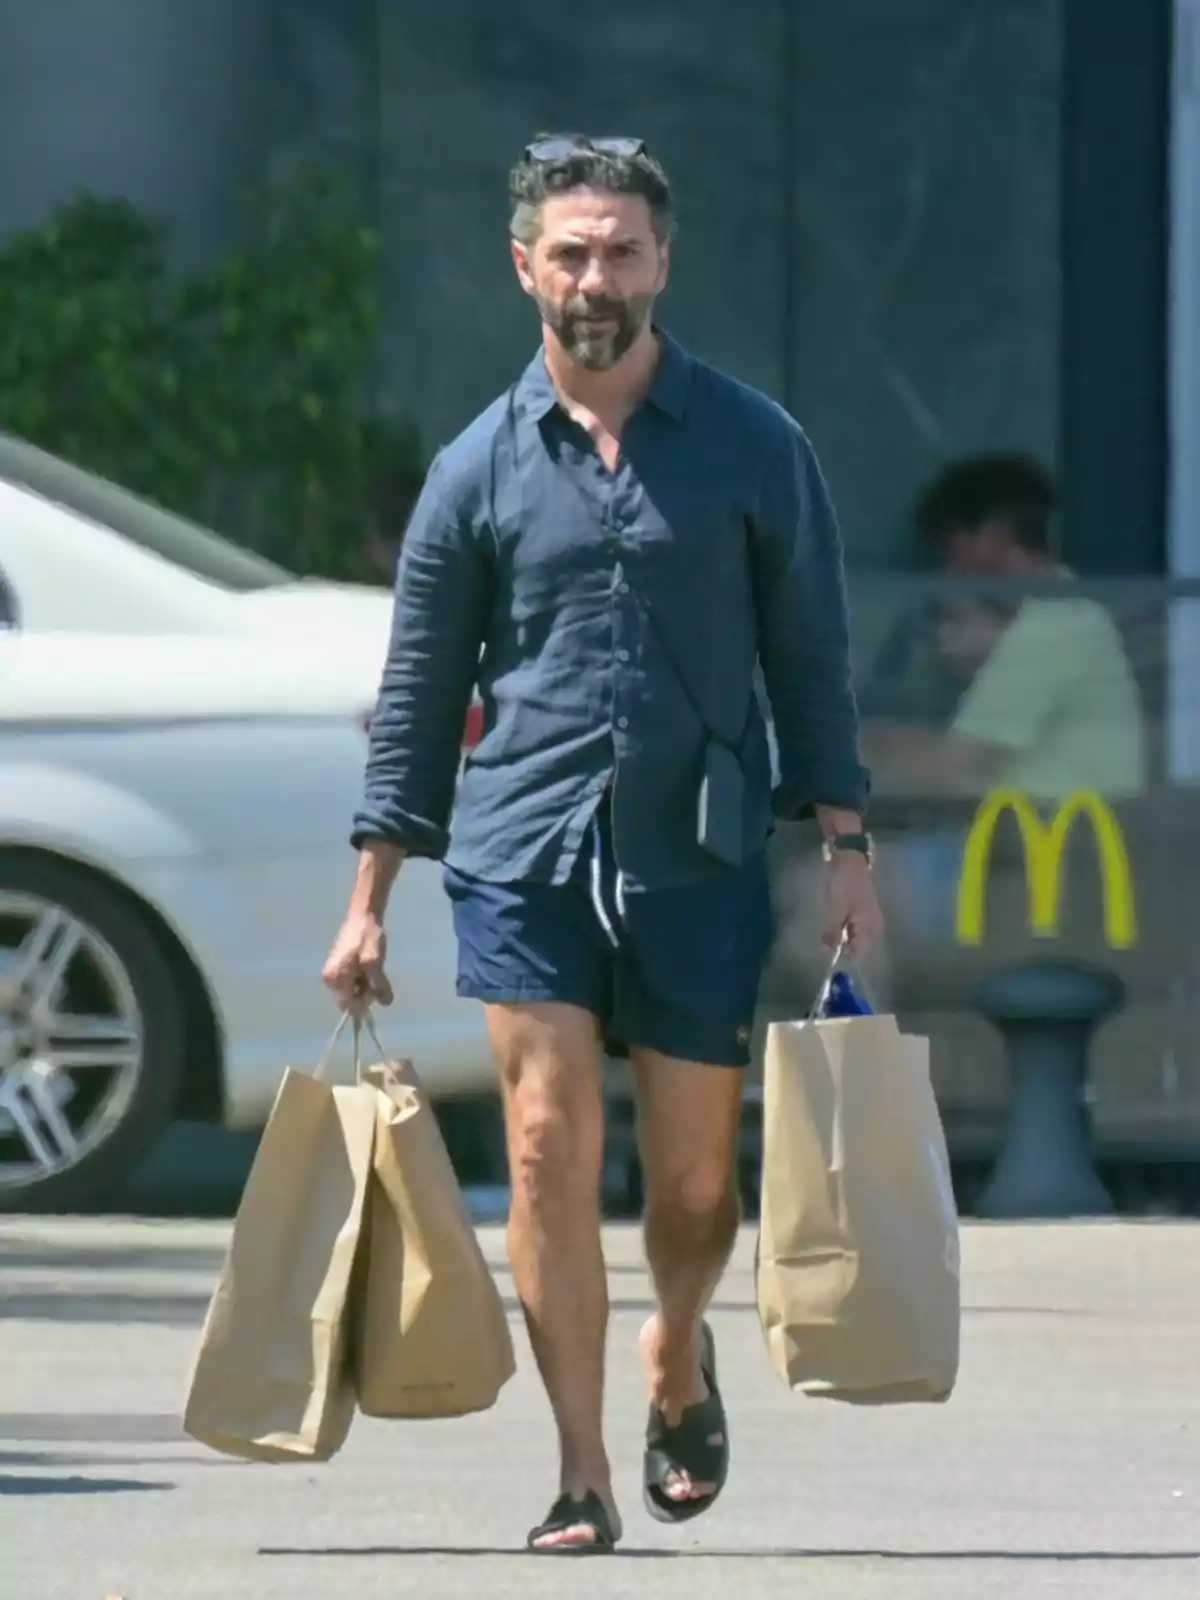 Pepe Bastón con camisa azul y pantalones cortos lleva dos bolsas de papel mientras camina por un estacionamiento.